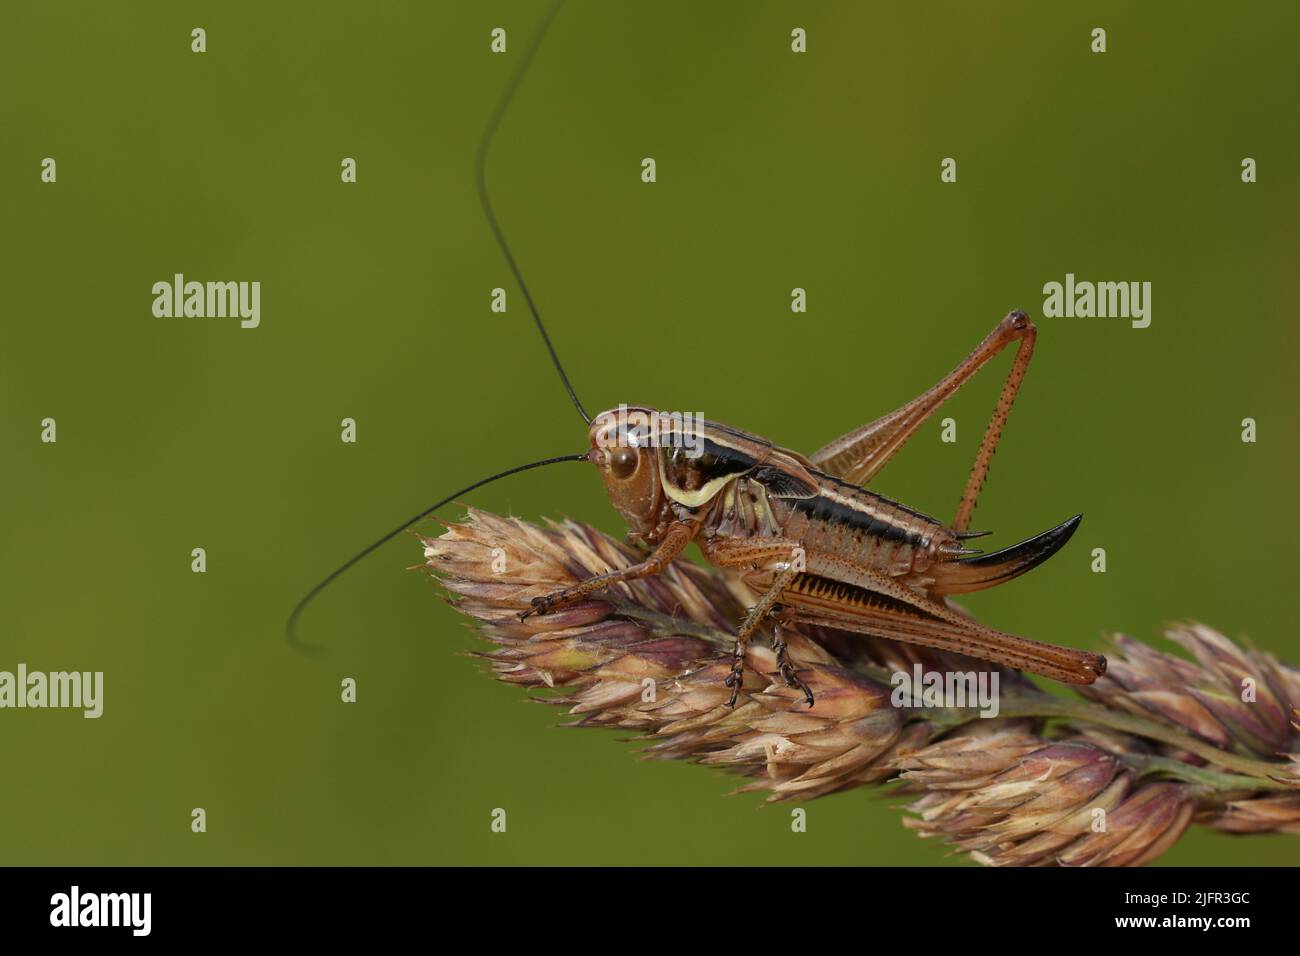 Un cricket de Roesel, Metrioptera roeselii, descansando sobre una semilla de pasto en un prado. Foto de stock